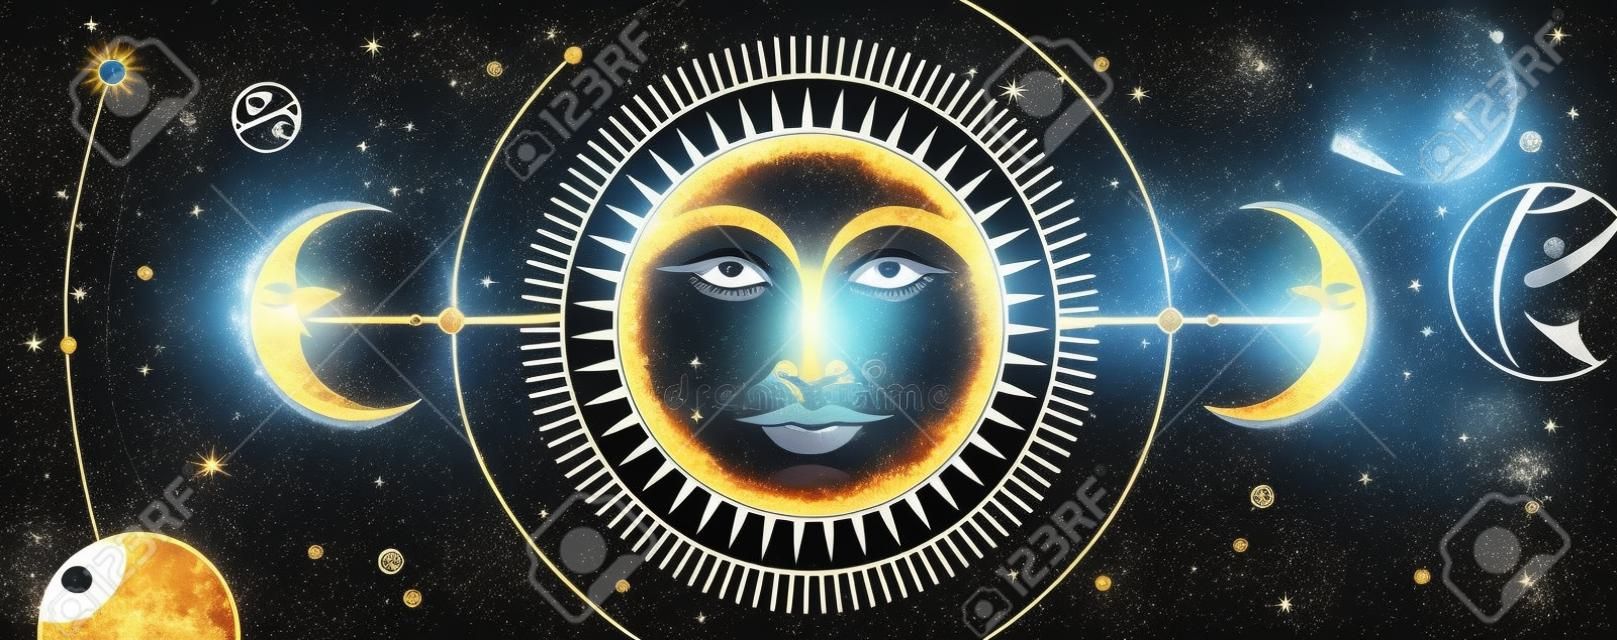 Moderne magische Hexereikarte mit Astrologie-Sonnen- und Mondzeichen mit menschlichem Gesicht auf Weltraumhintergrund. Tag und Nacht. Realistische Handzeichnungsvektorillustration